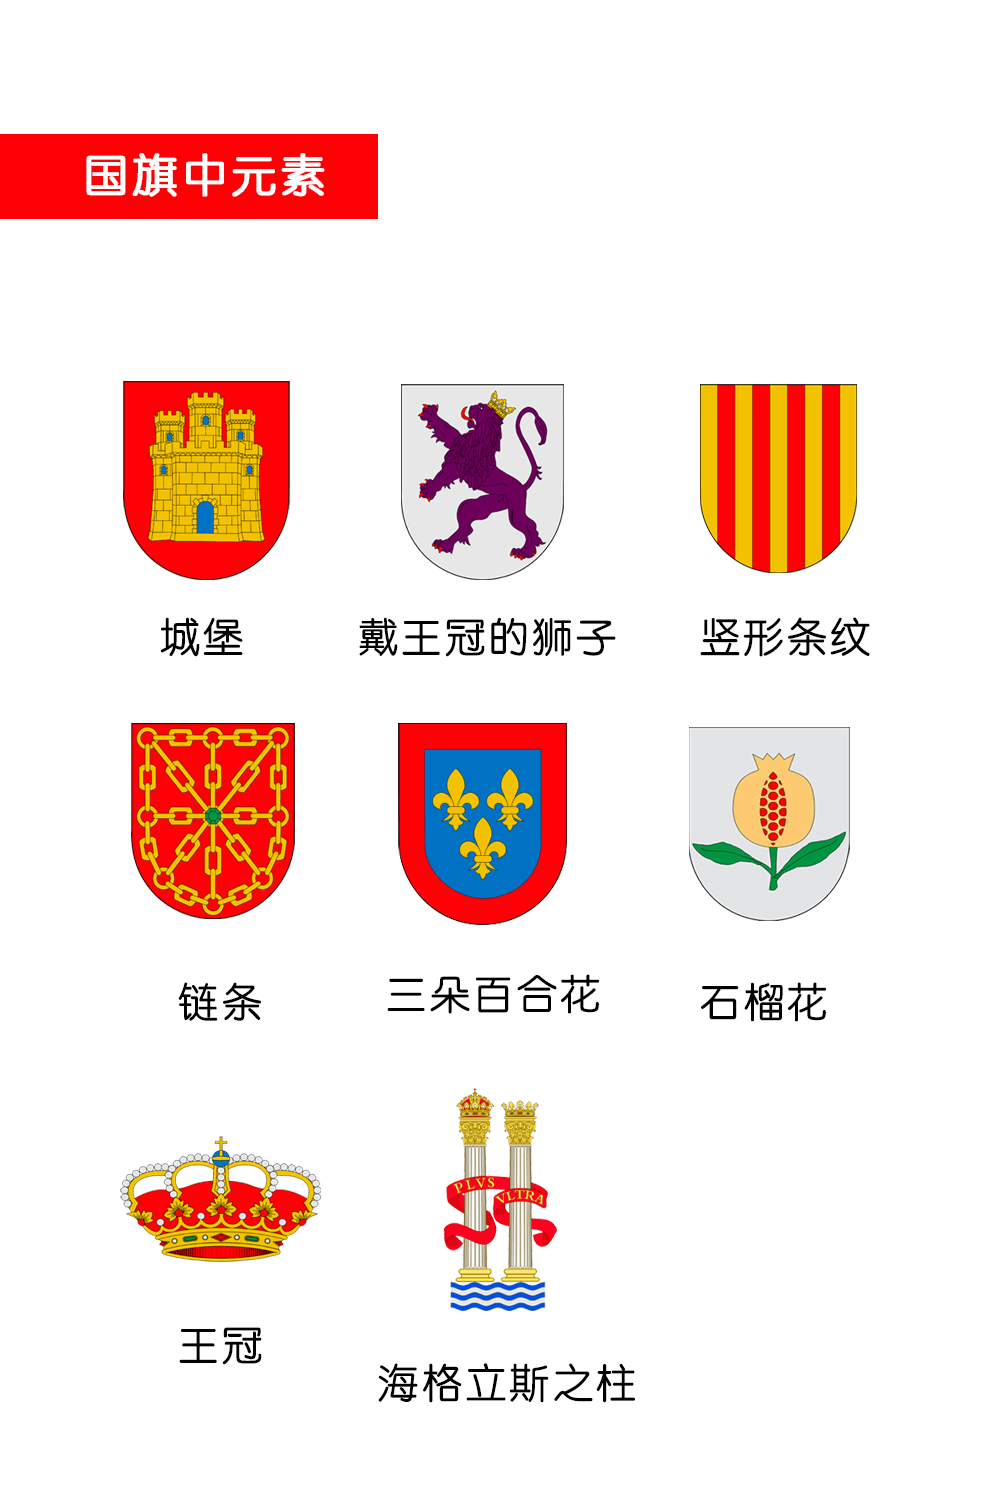 西班牙国徽中元素及意义 I 政府机构徽标(图2)